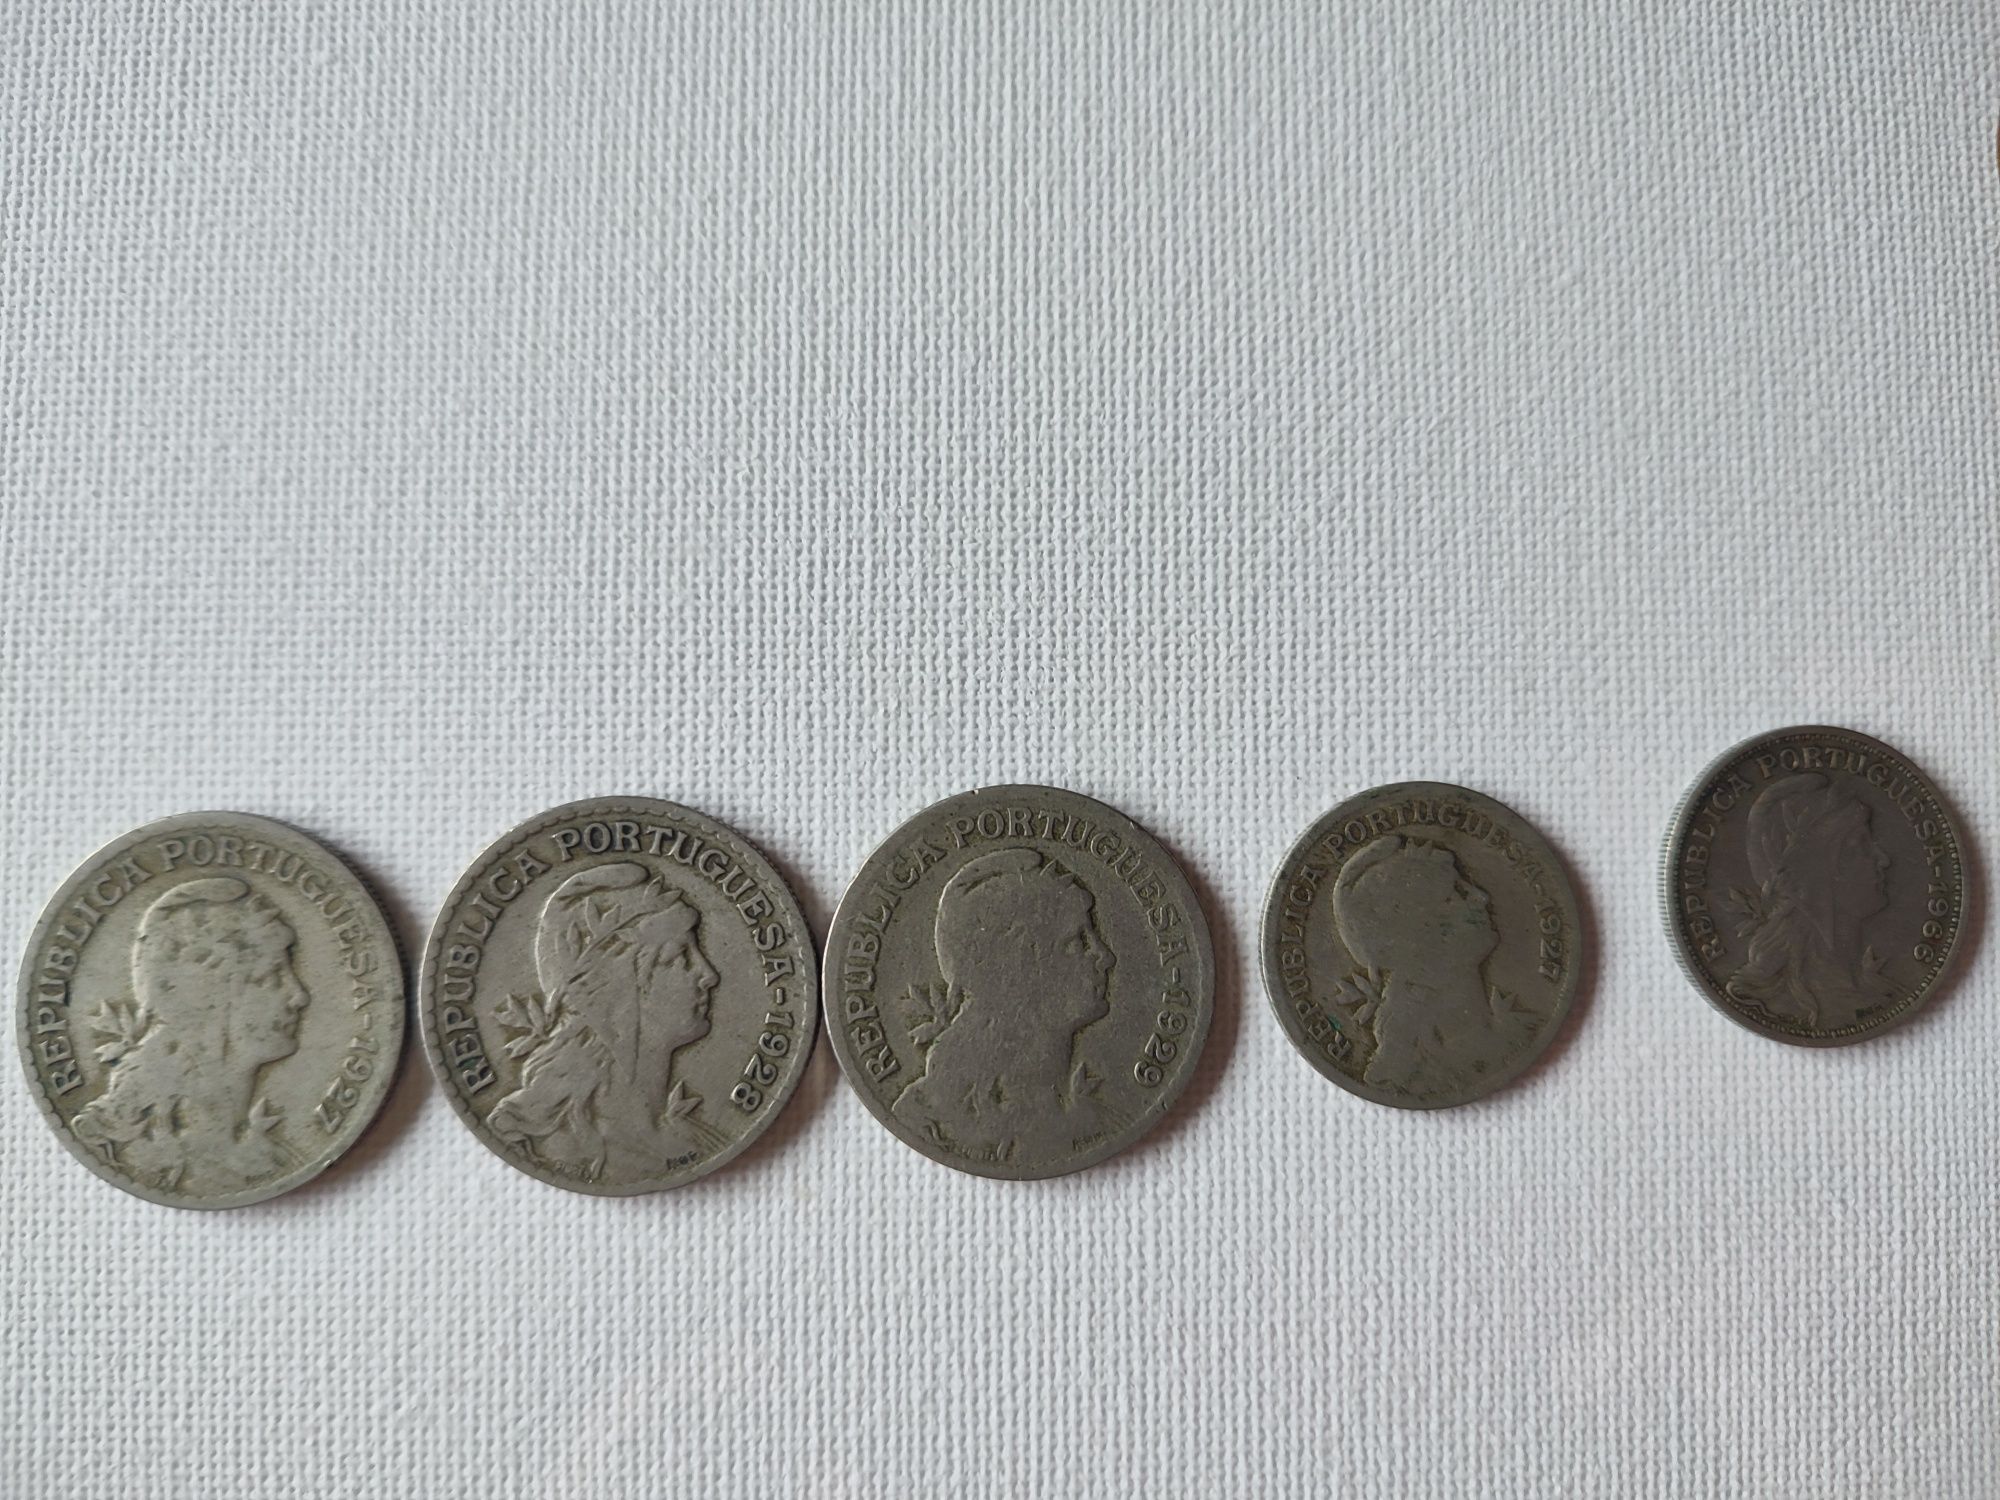 Lote de moedas antigas